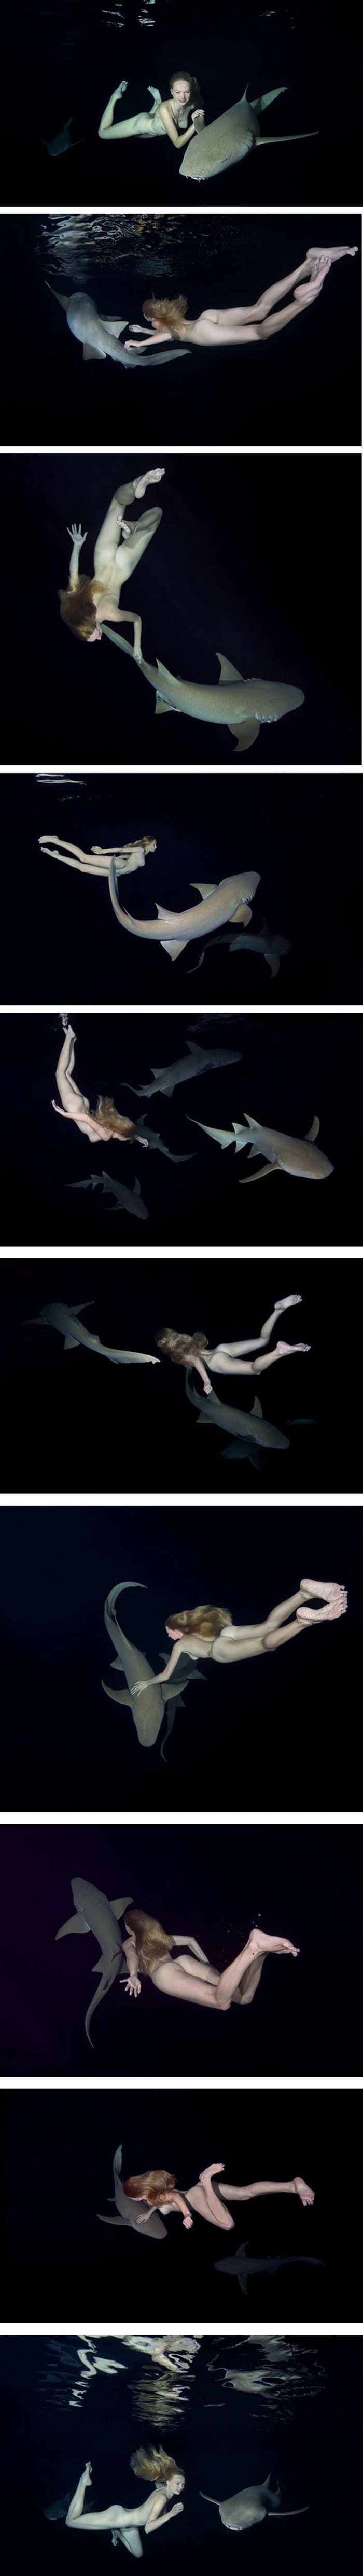 Model Irina Britanova gola se fotografirala pod vodom s morskim psima